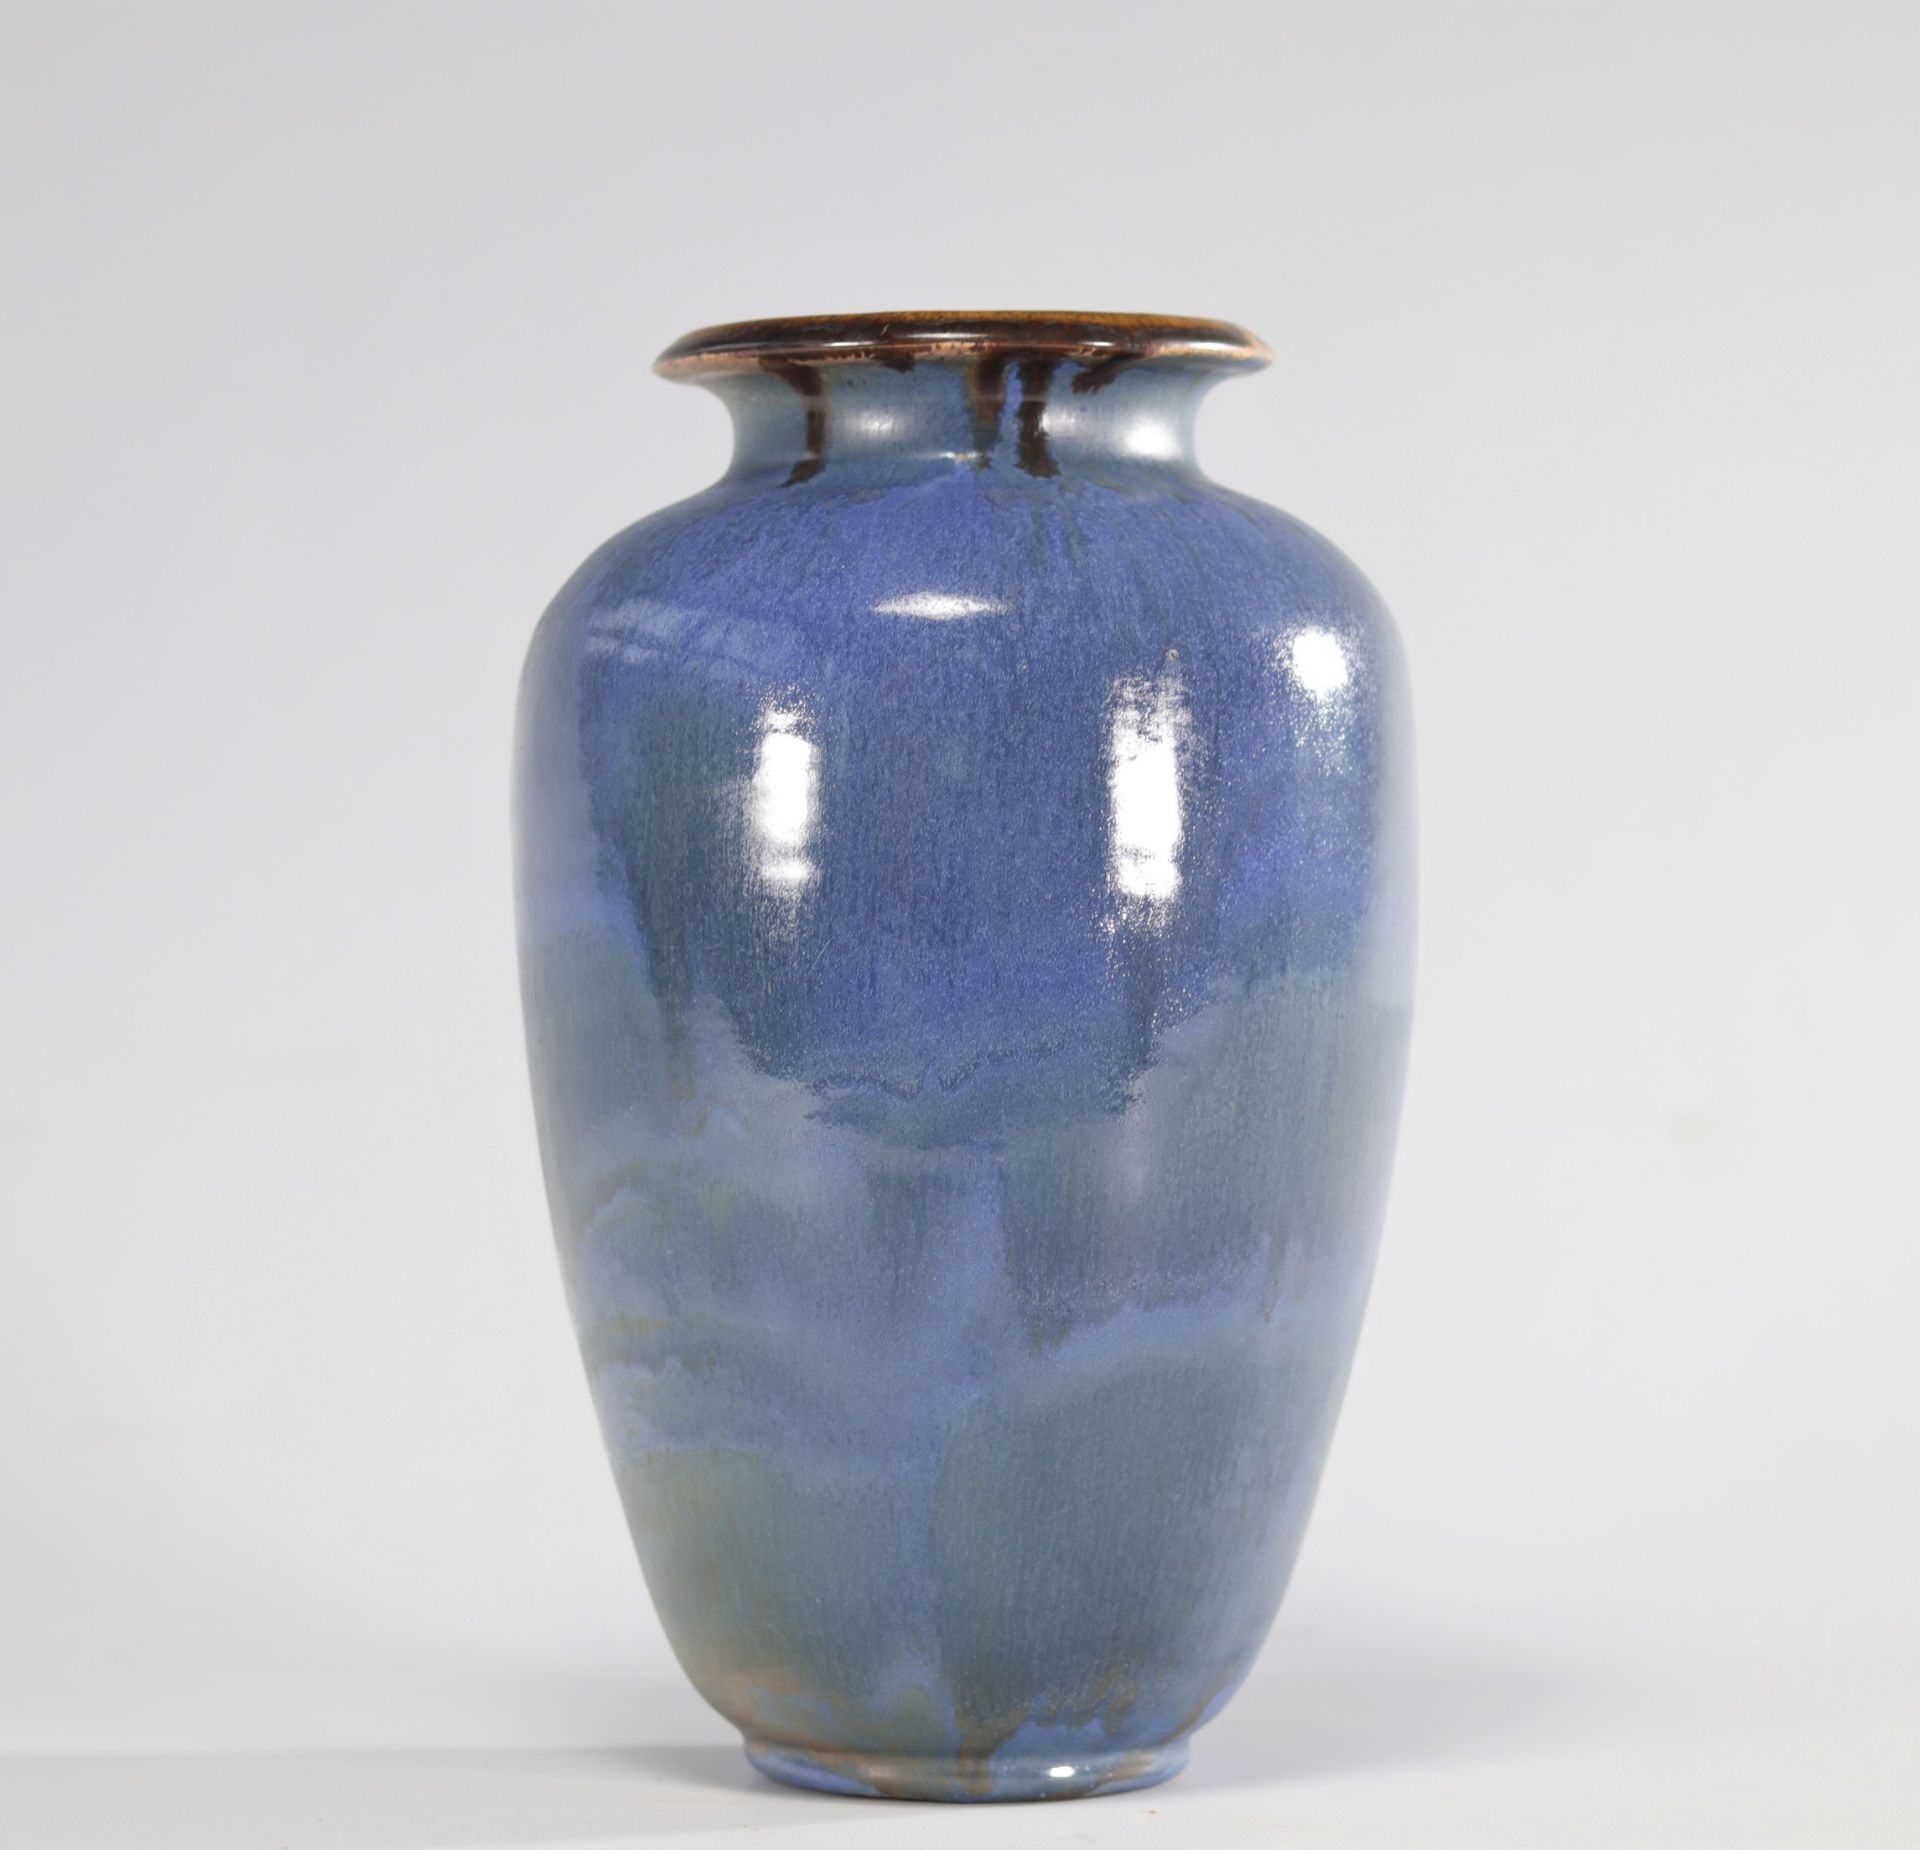 Guerin vase in glazed stoneware